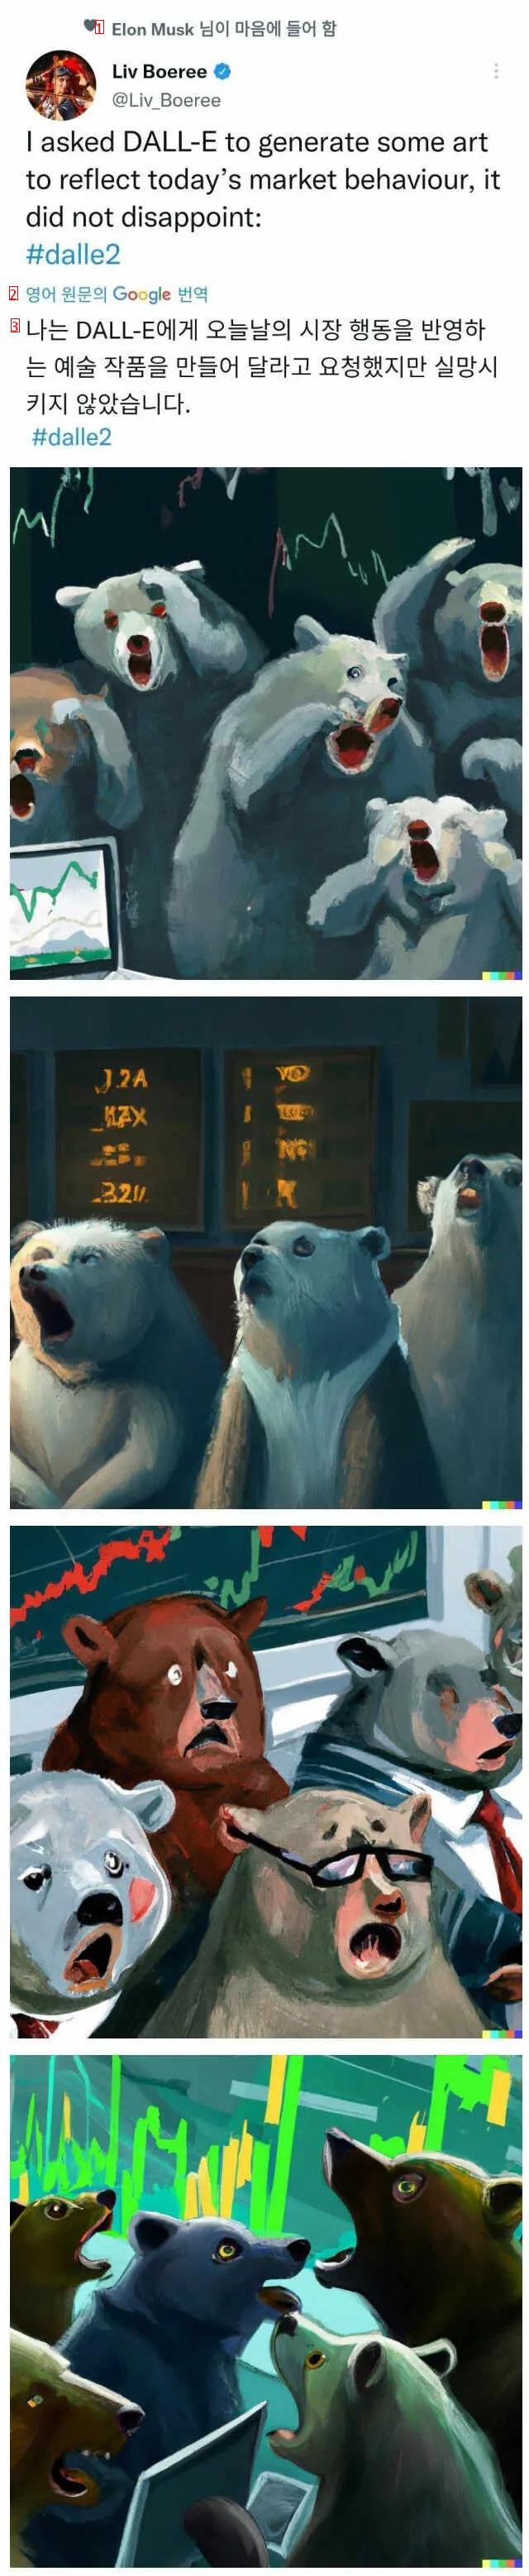 AIに頼んだ株式市場